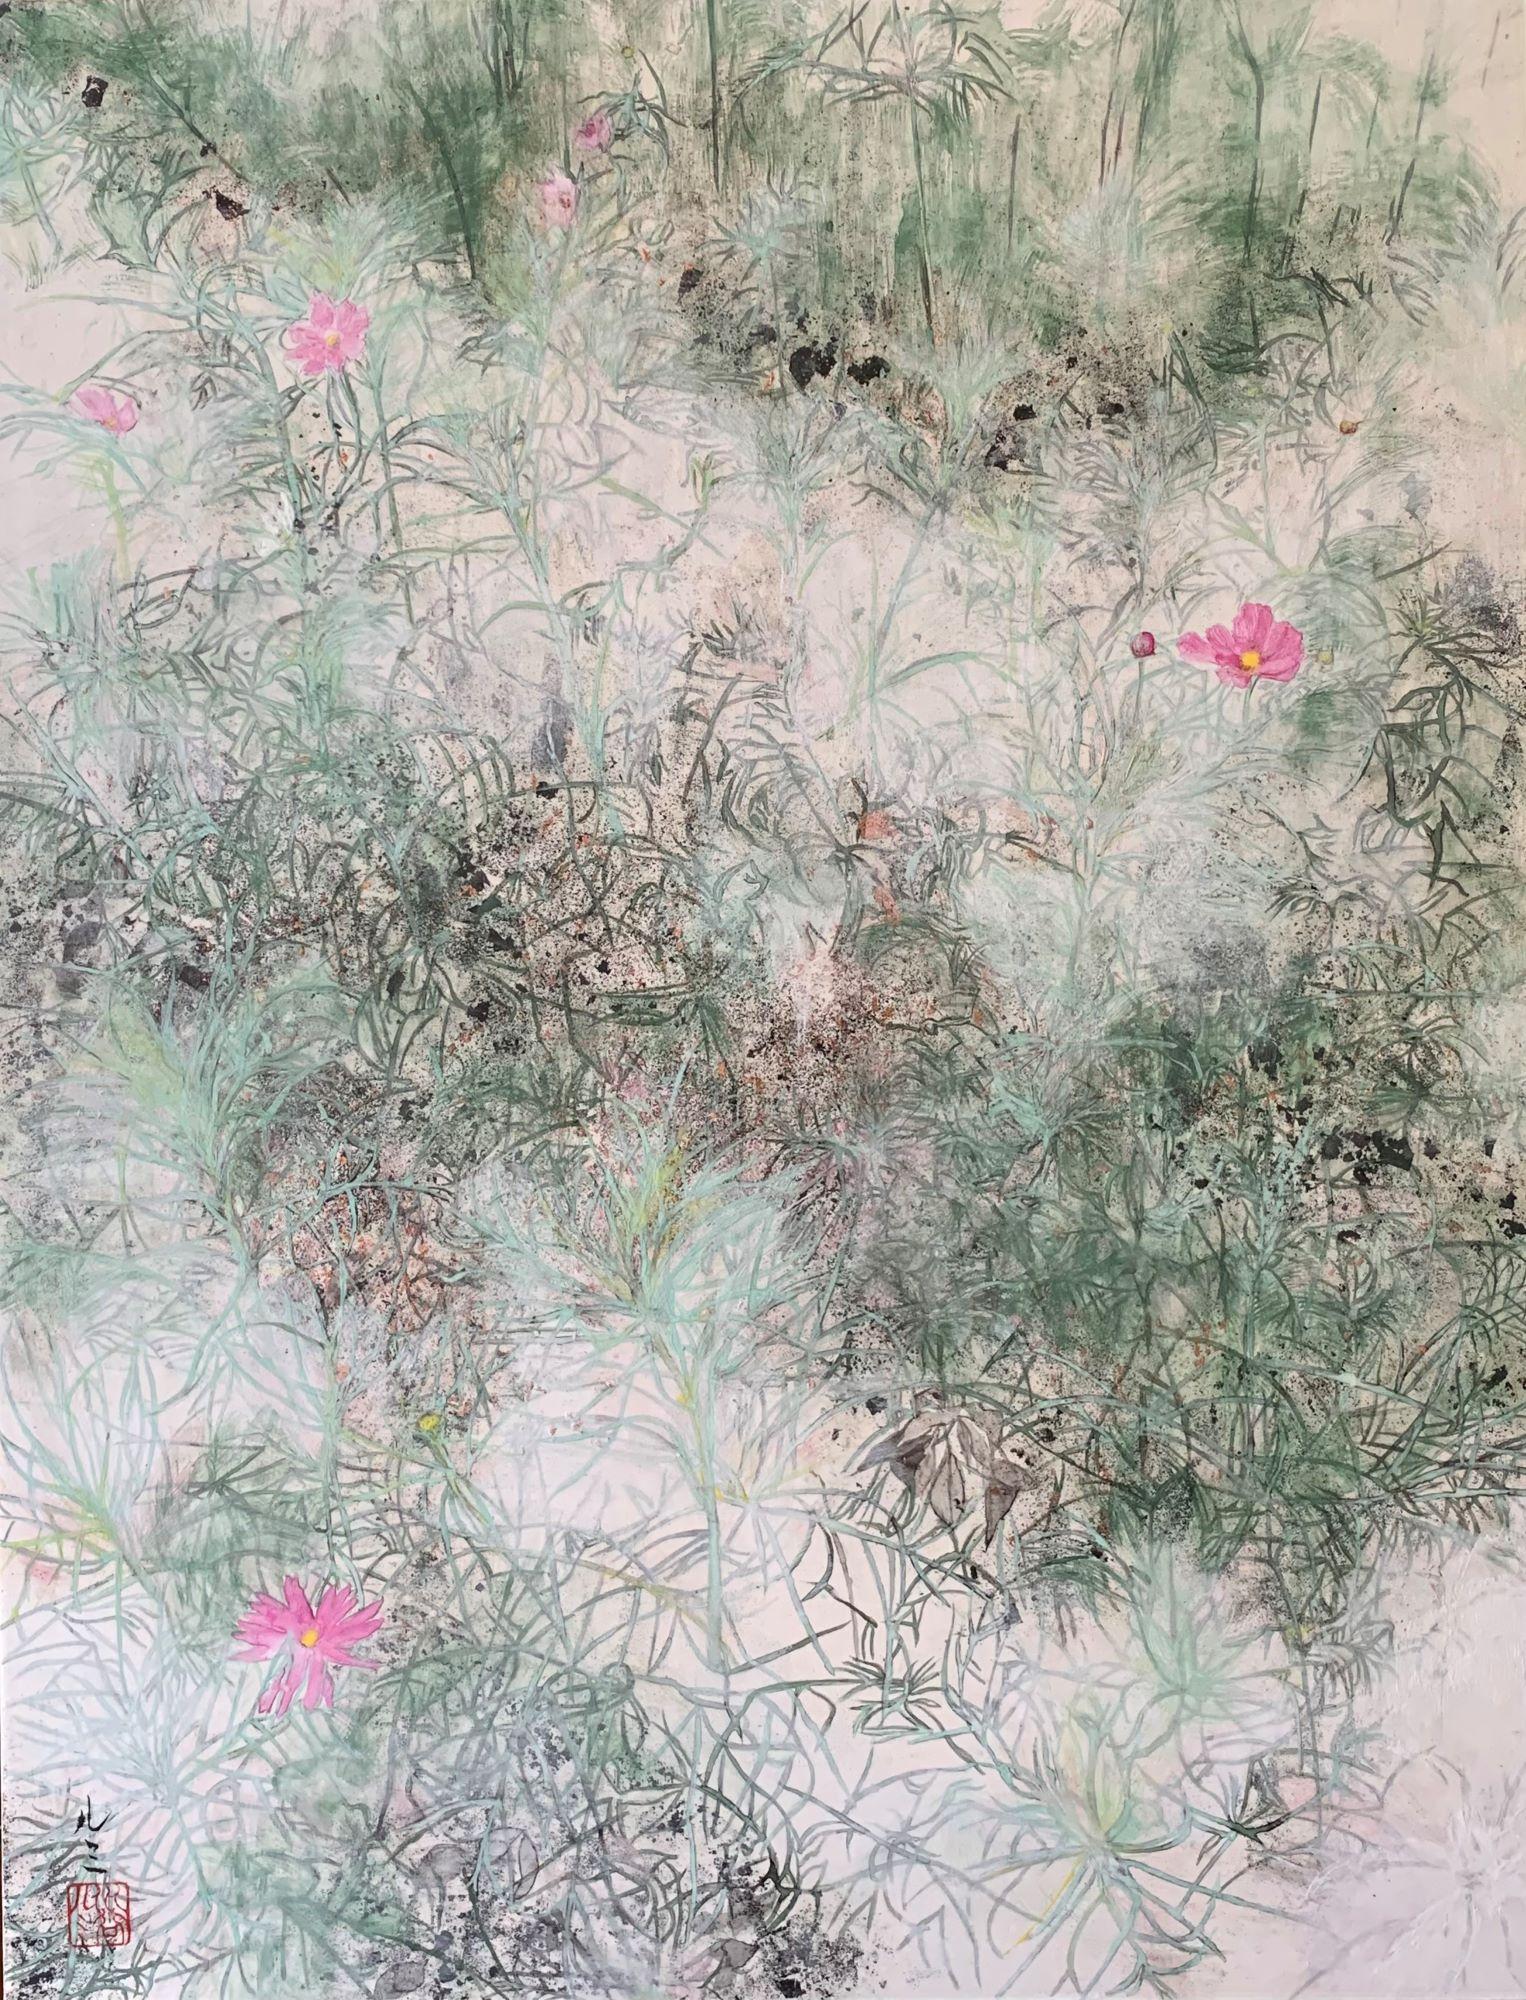 Cosmos II de Lumi Mizutani - peinture de paysage de style japonais, fleurs roses